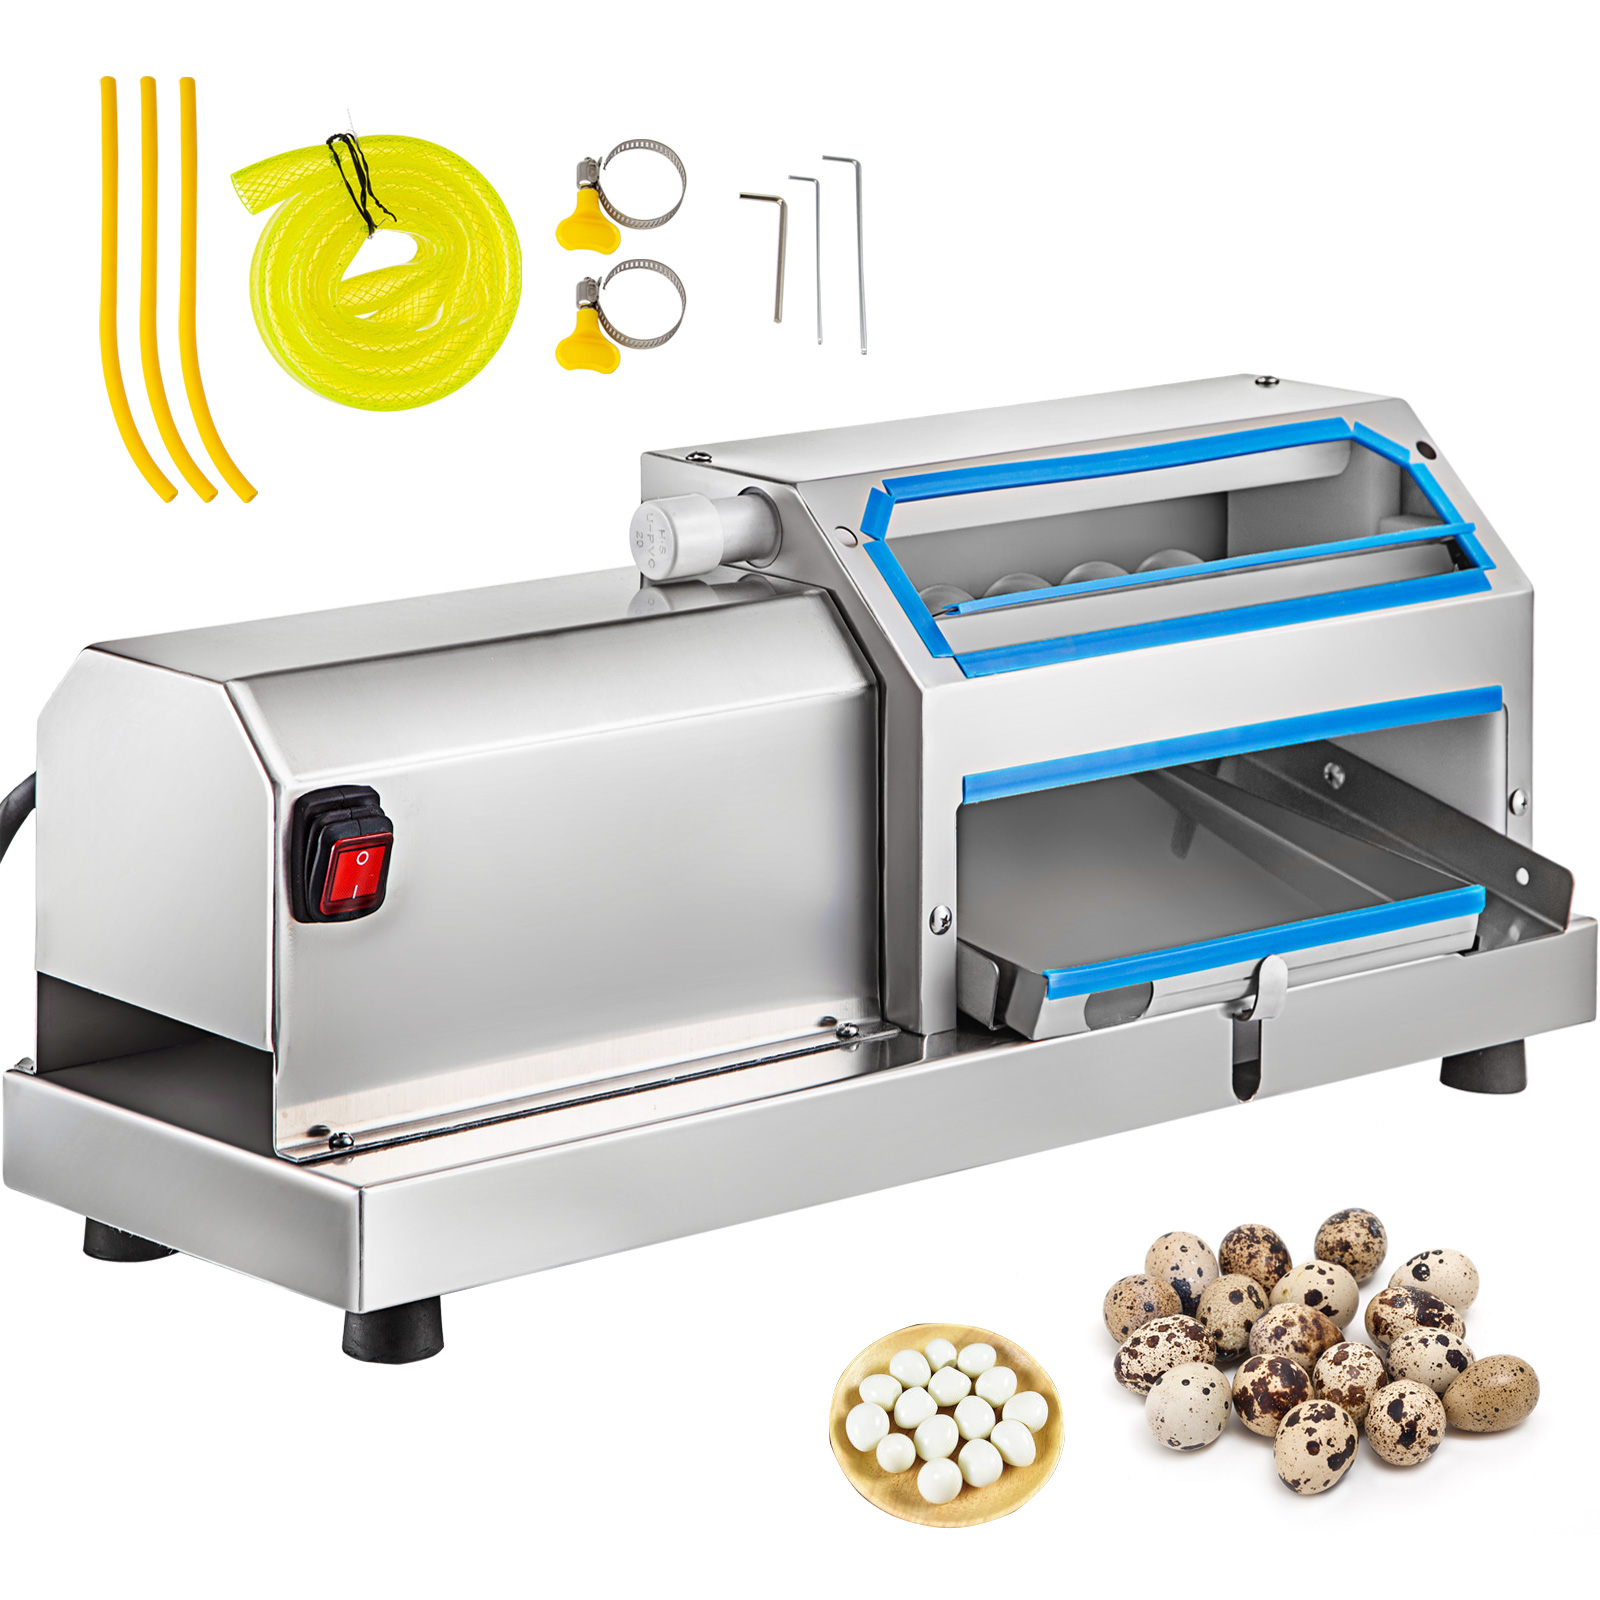 china quail egg peeler machine